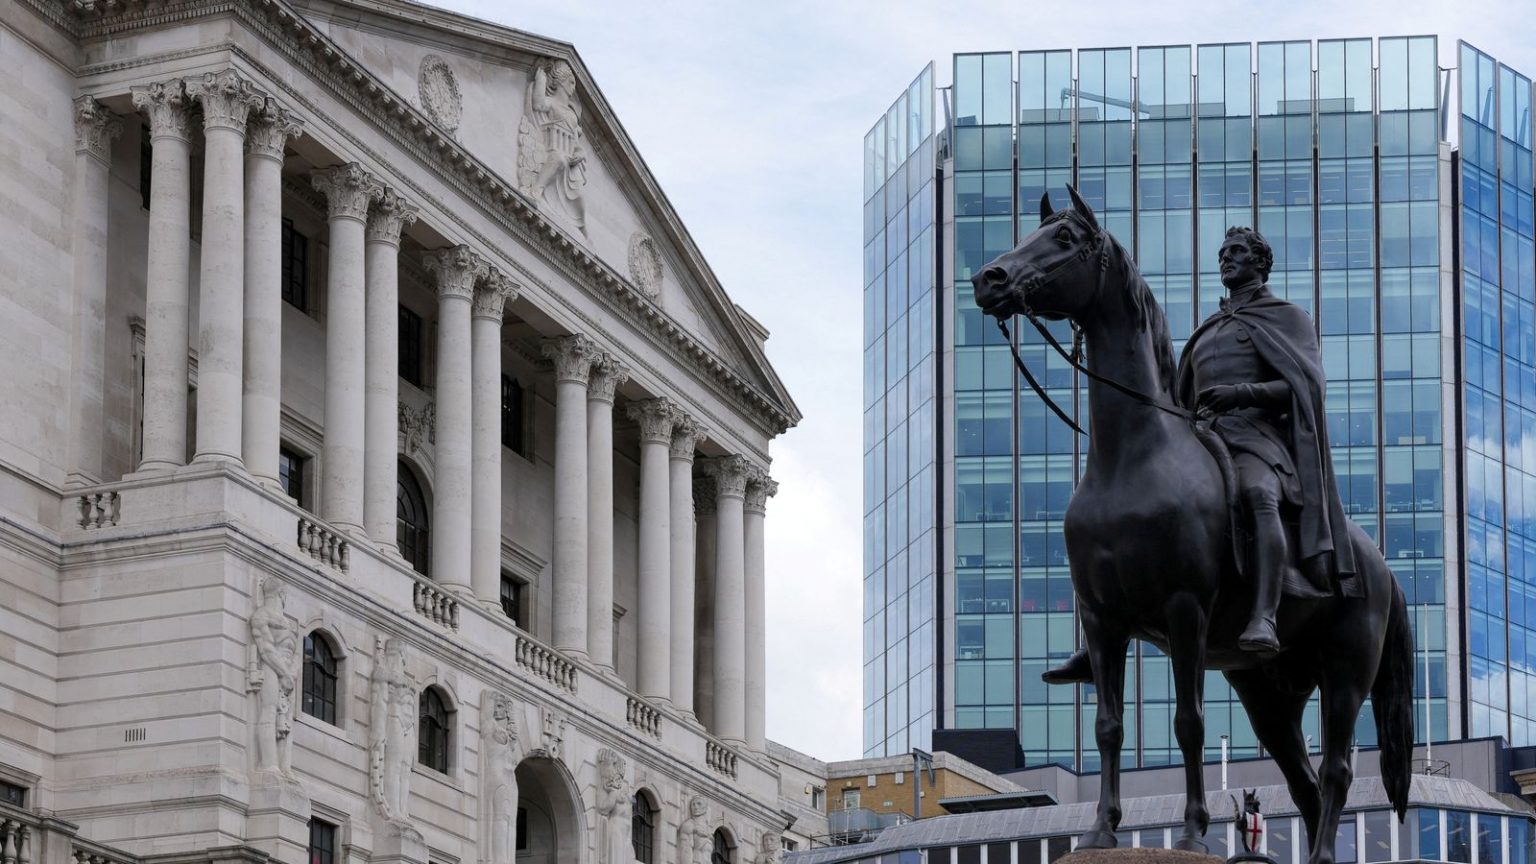 SITUATA EKONOMIKE/ Banka e Anglisë nis ‘operacionin’ për stabilitetin financiar të Mbretërisë së Bashkuar, ja veprimi urgjent